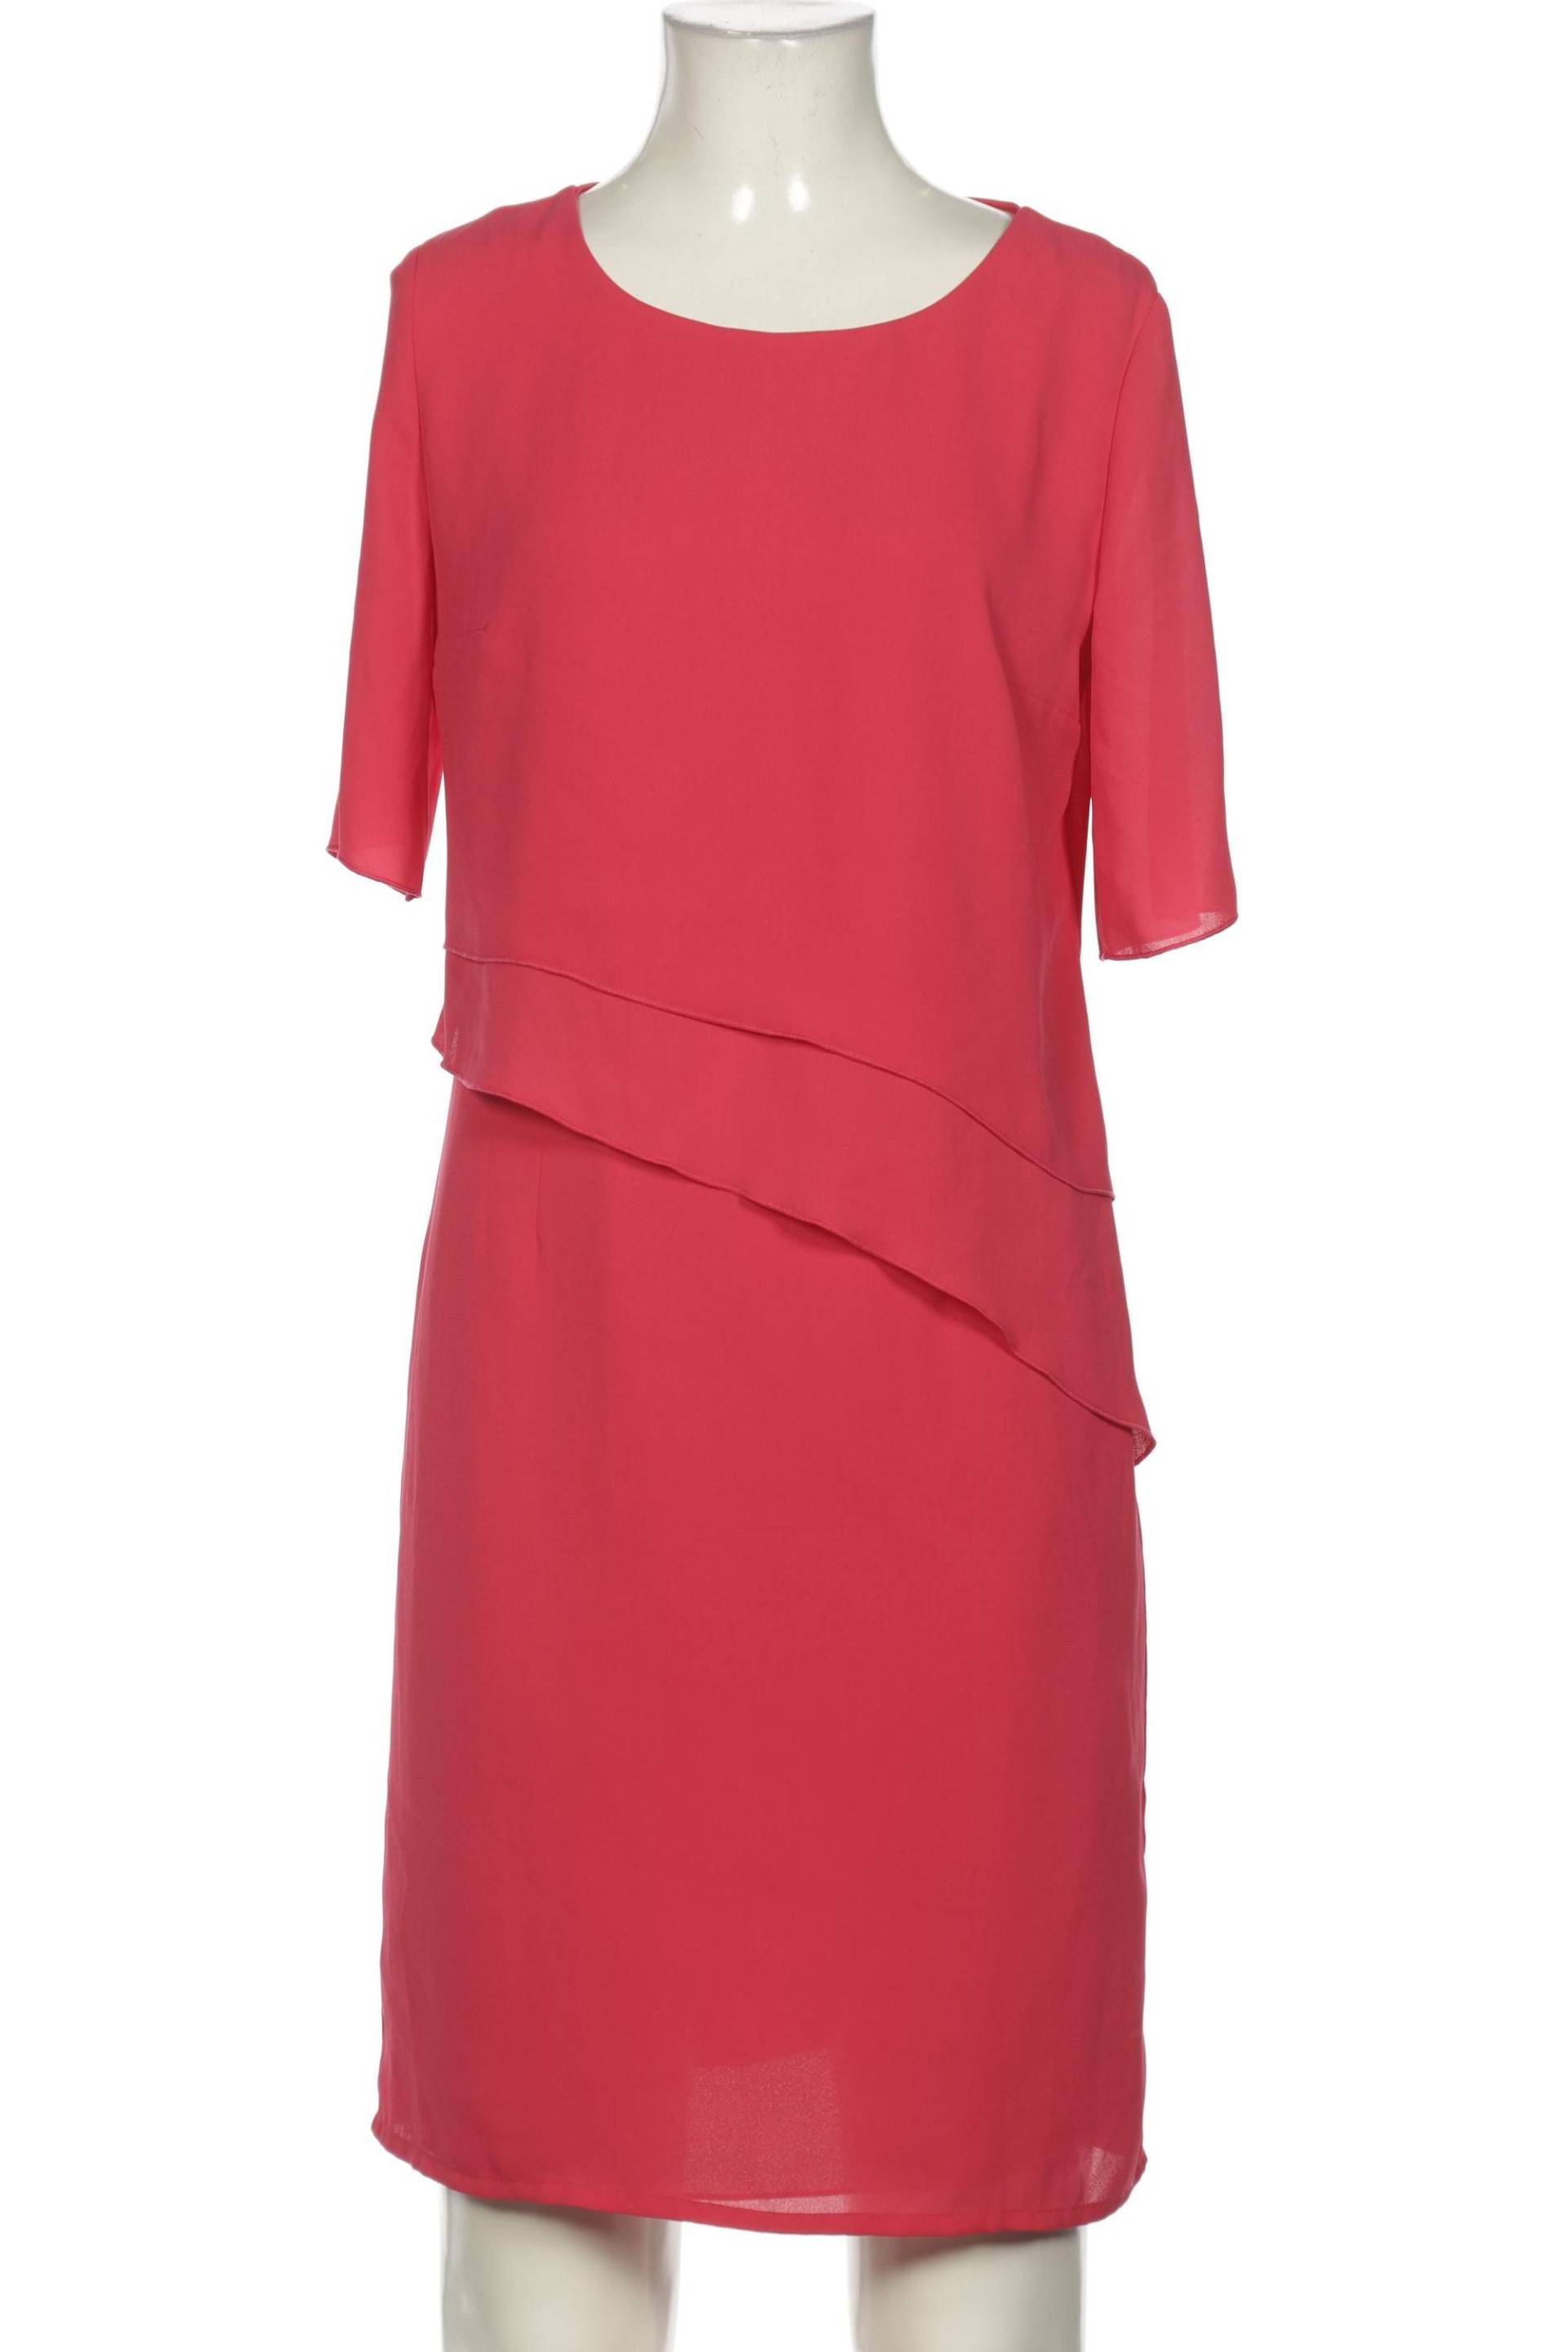 Sommermann Damen Kleid, pink, Gr. 36 von Sommermann